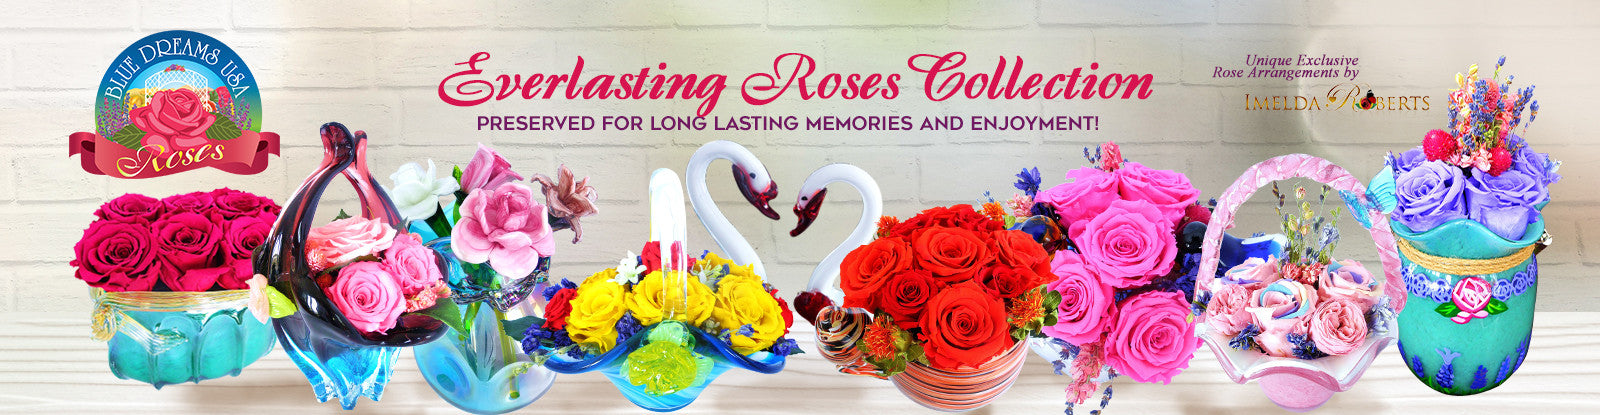 Roses - Blue Dreams Everlasting Roses - Preserved Rose Floral Arrangements